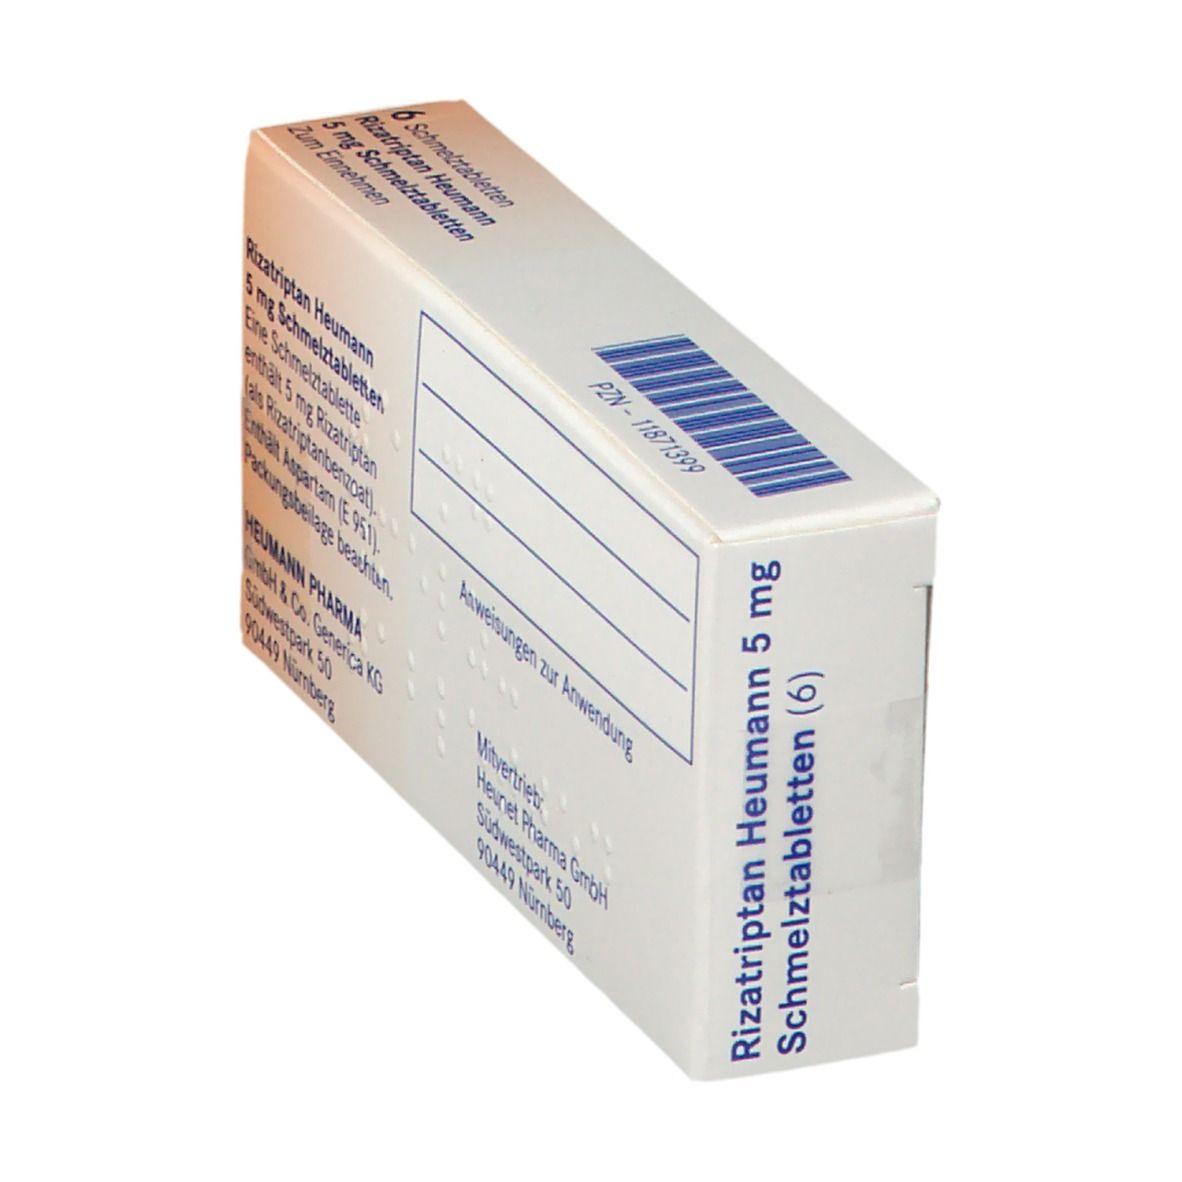 Rizatriptan Heumann 5 mg Schmelztabletten